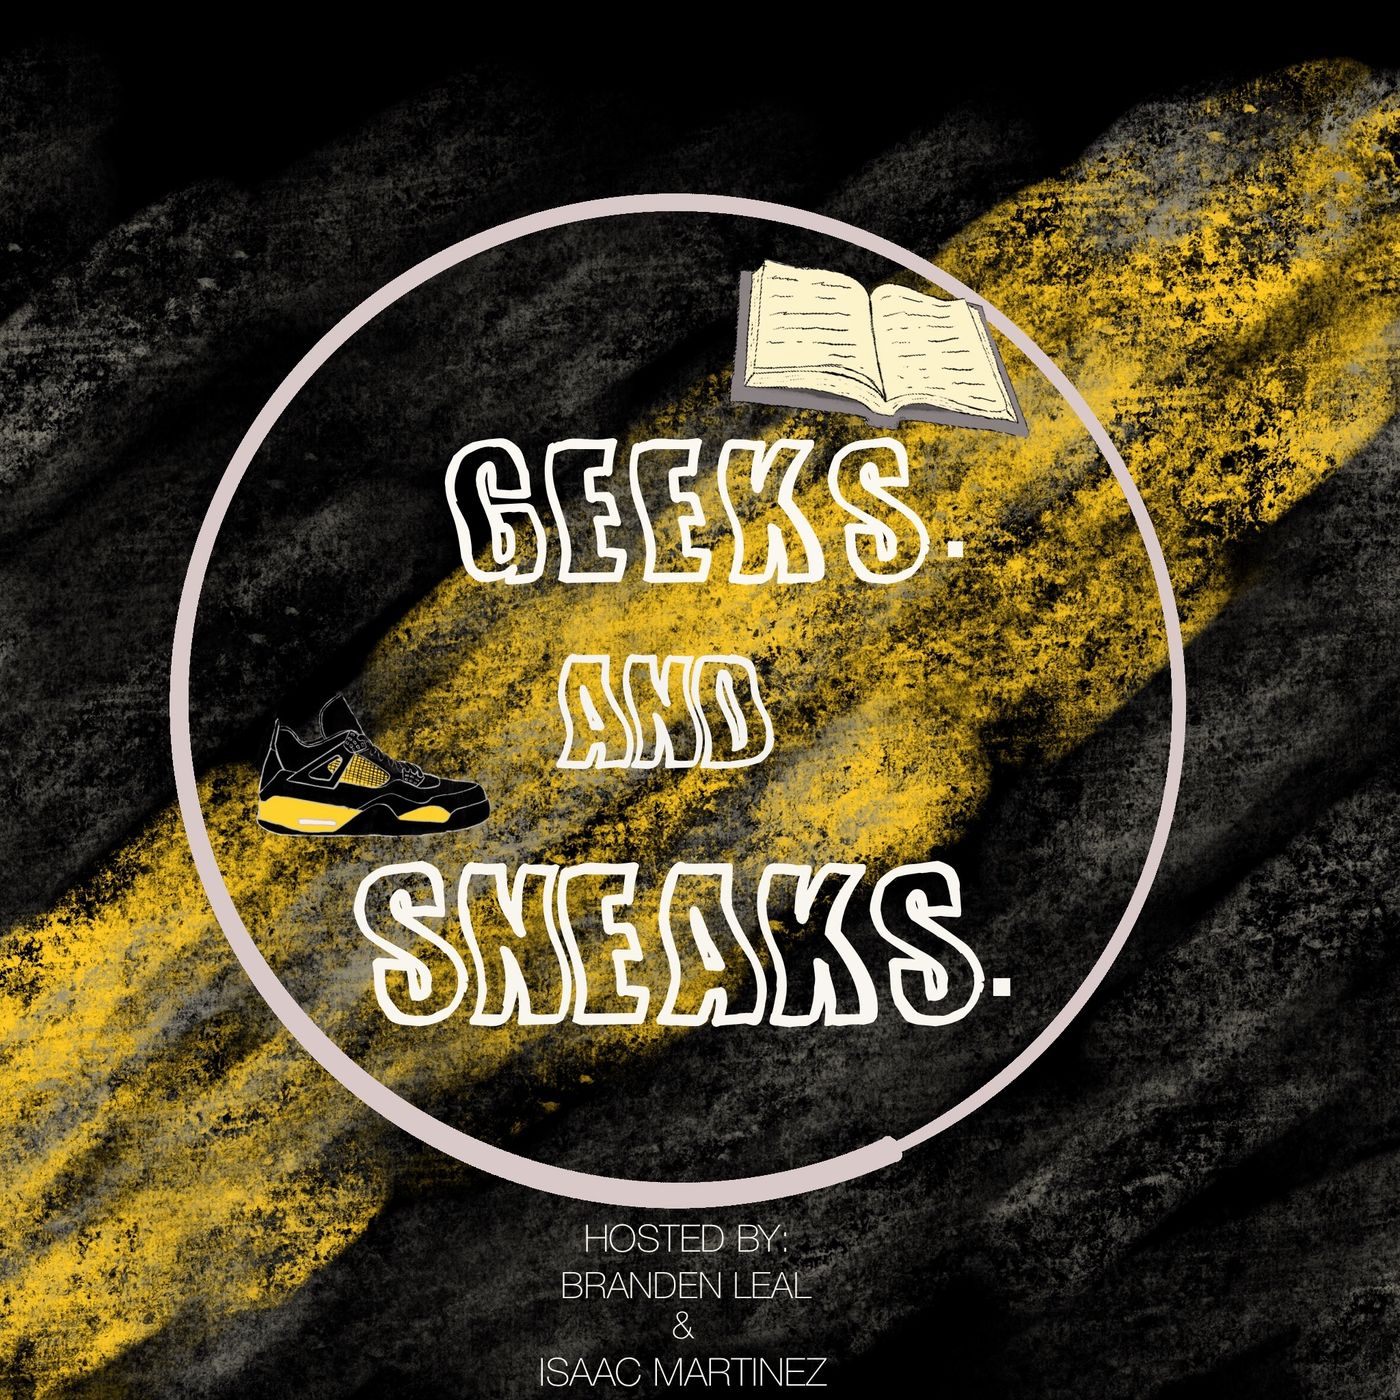 Geeks & sneaks